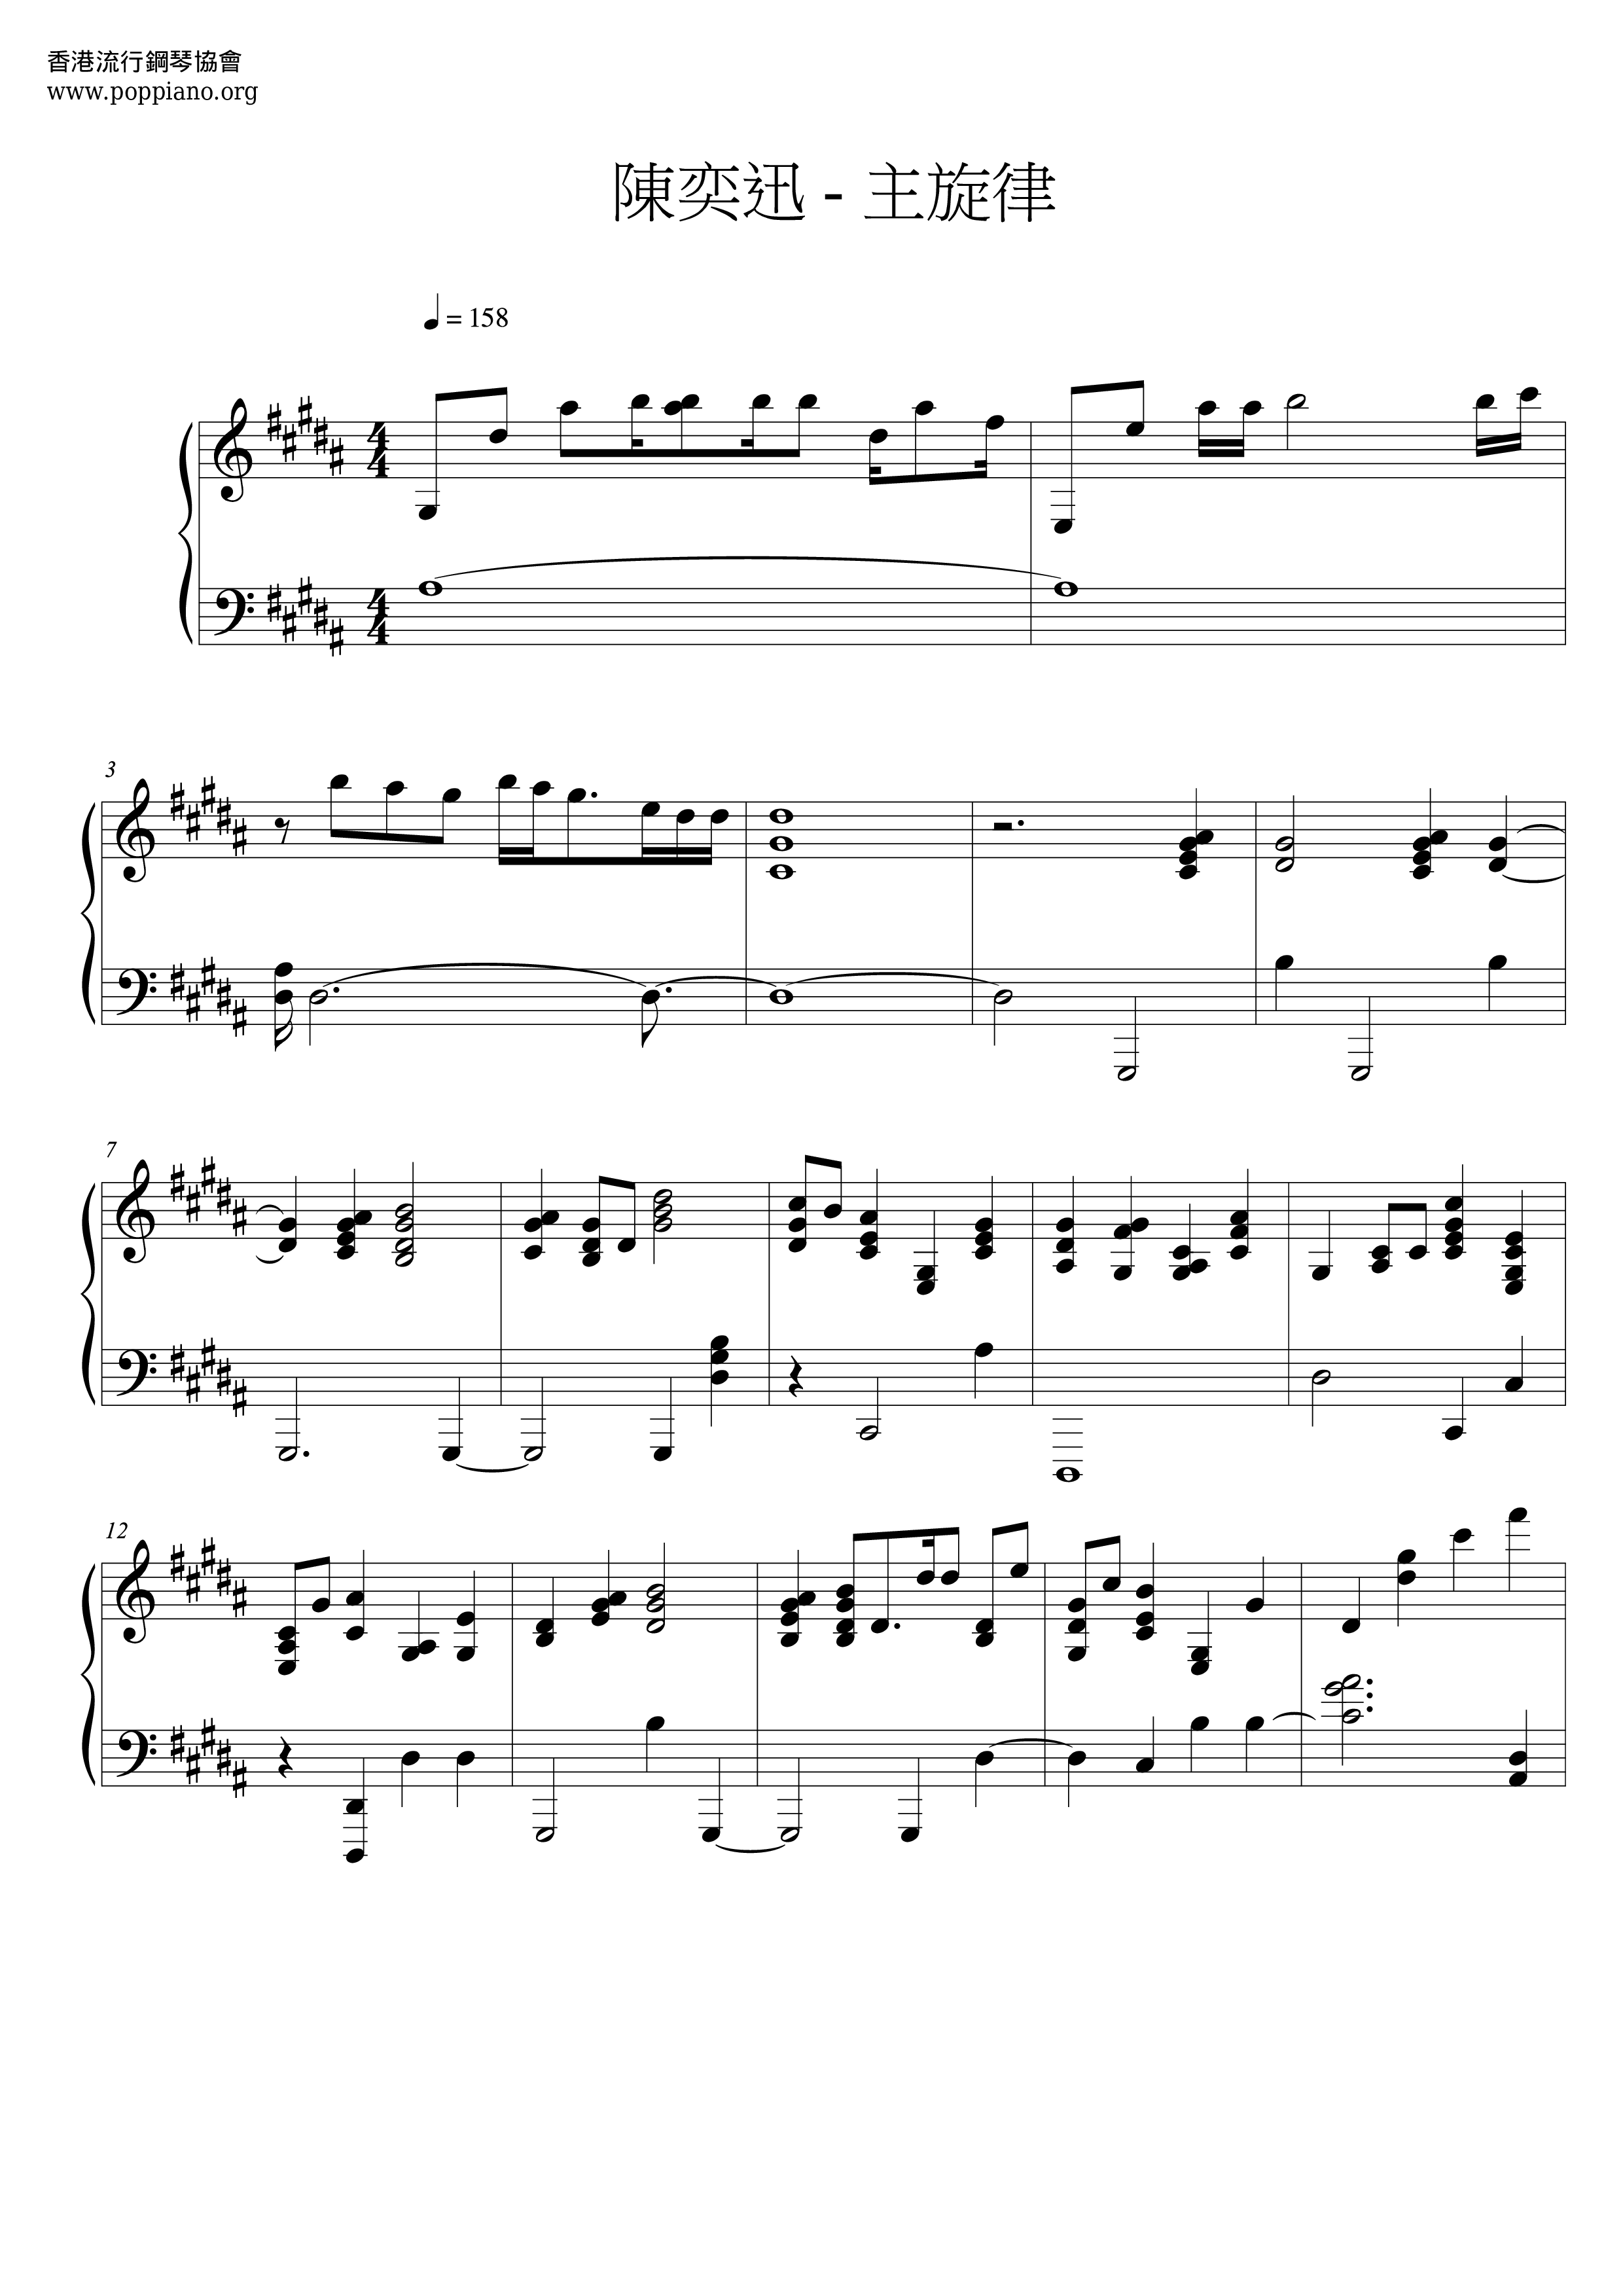 Main Melody Score